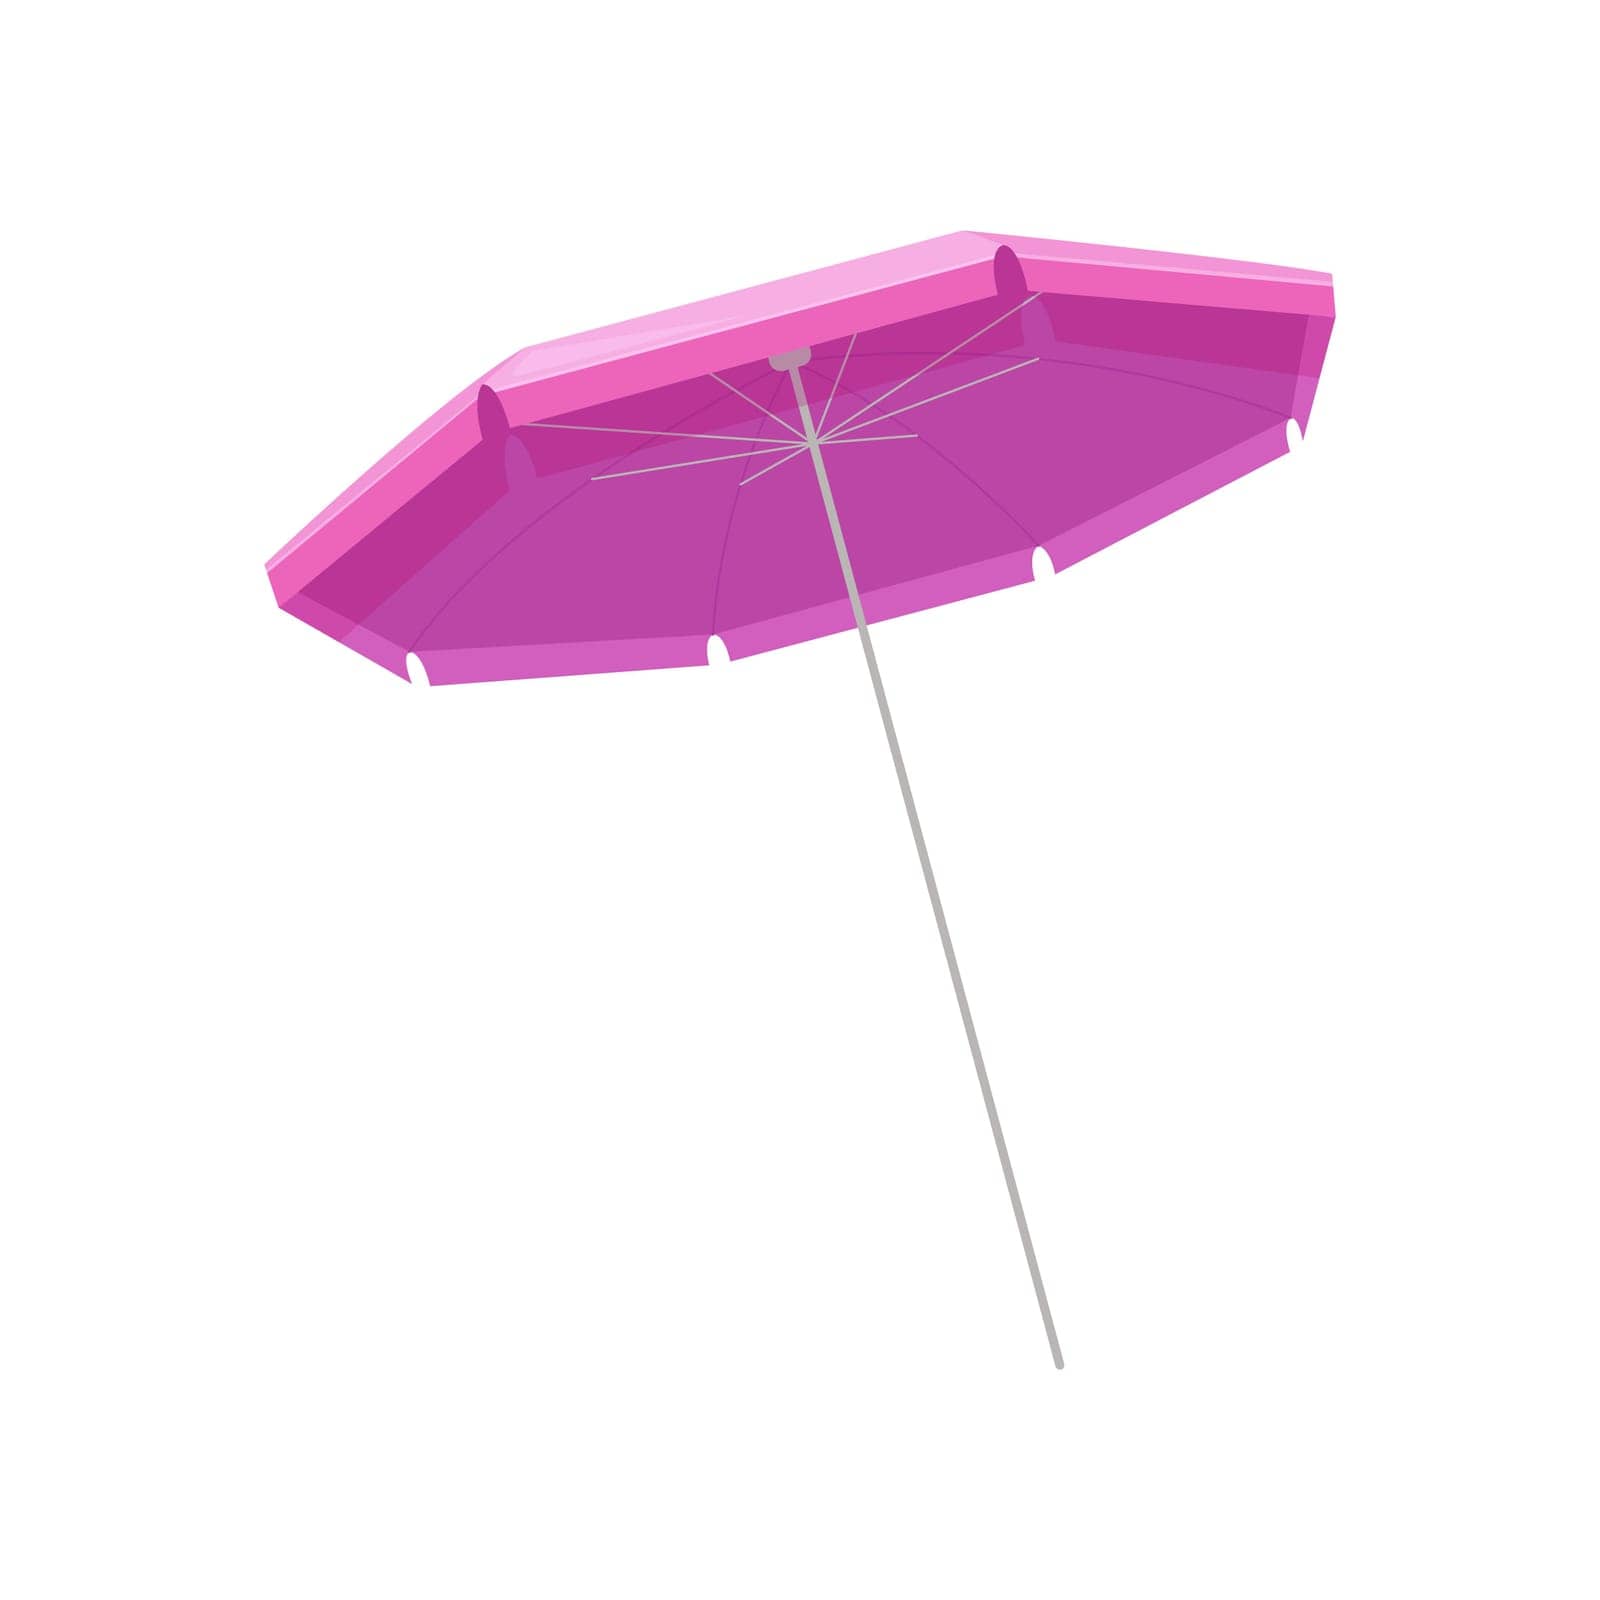 Sea beach umbrella by Popov